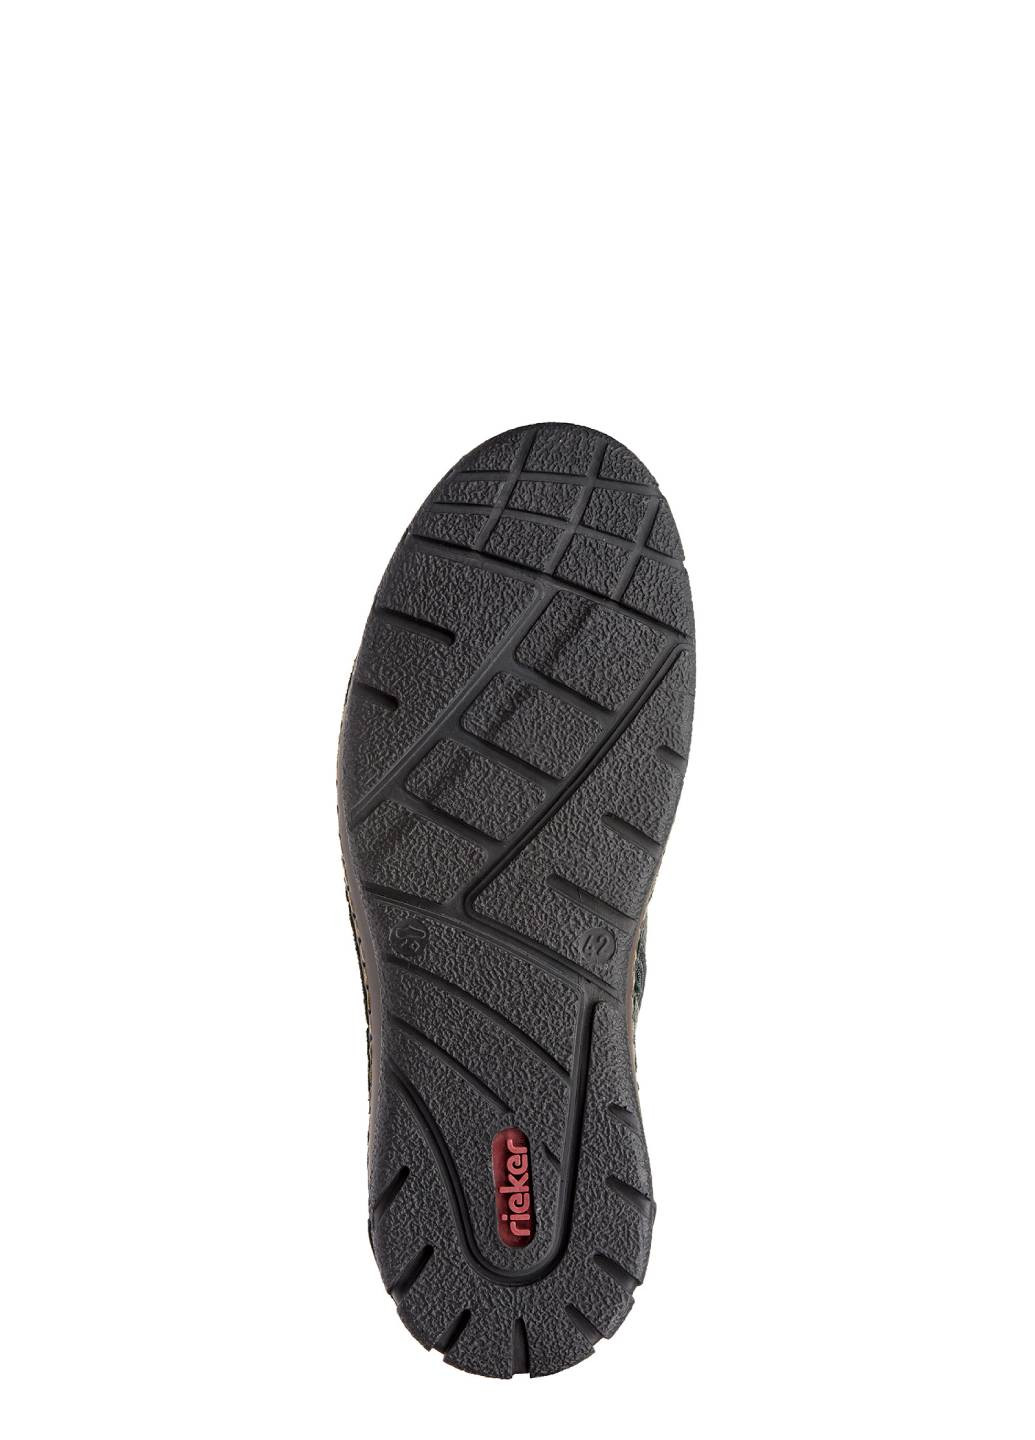 Черные зимние ботинки мужские утепленные Rieker